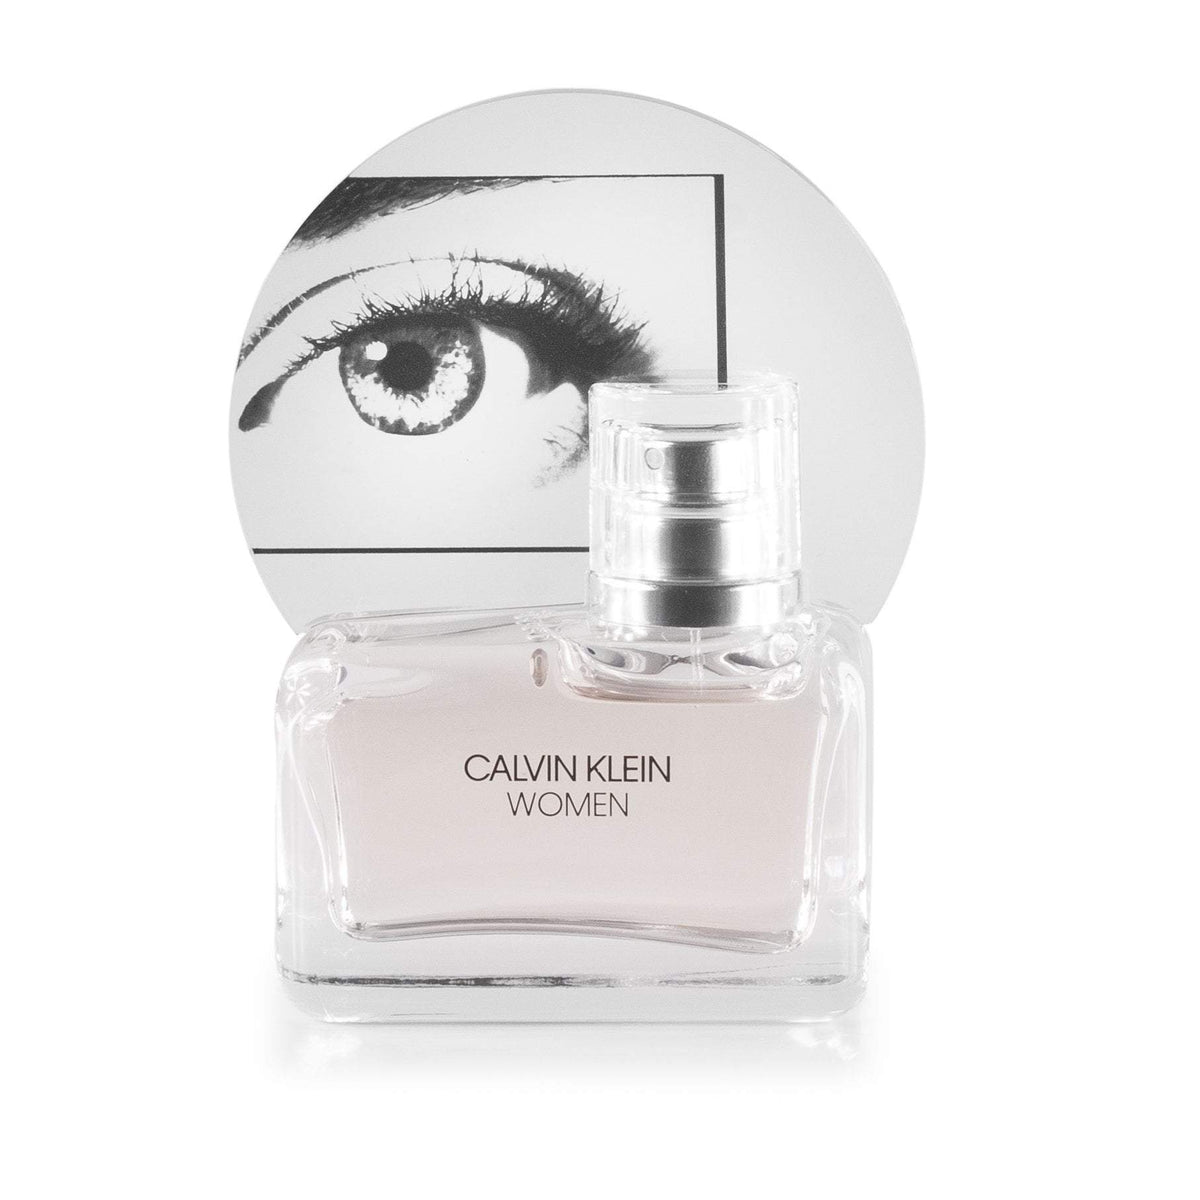 Women Eau de Parfum Spray for Women by Calvin Klein 1.7 oz.